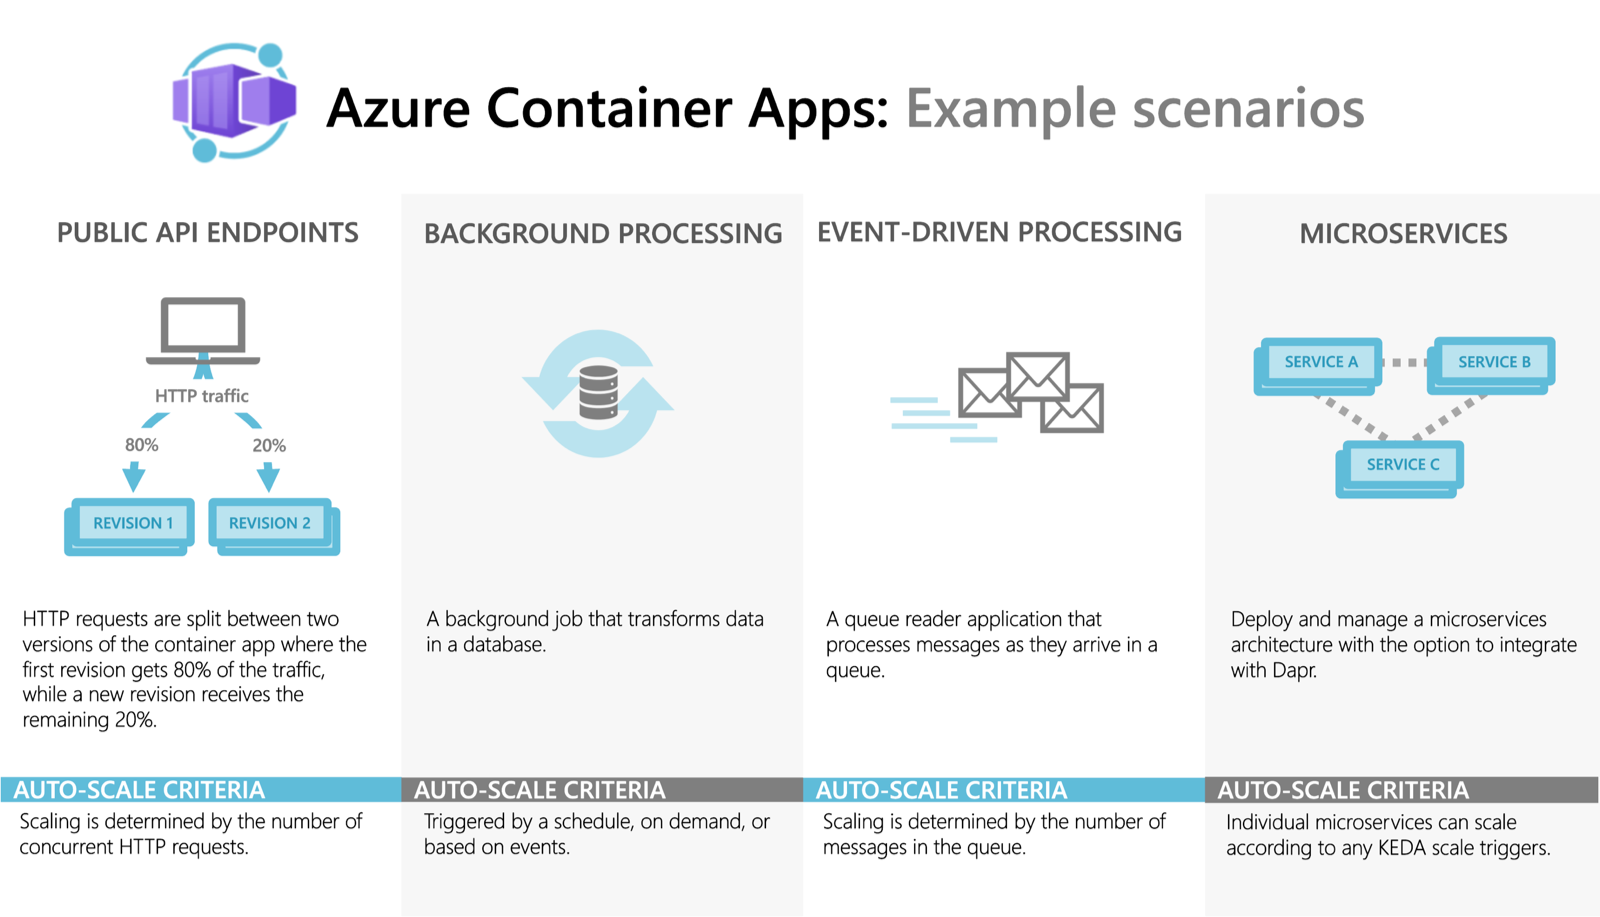 Escenarios de ejemplo para Azure Container Apps.